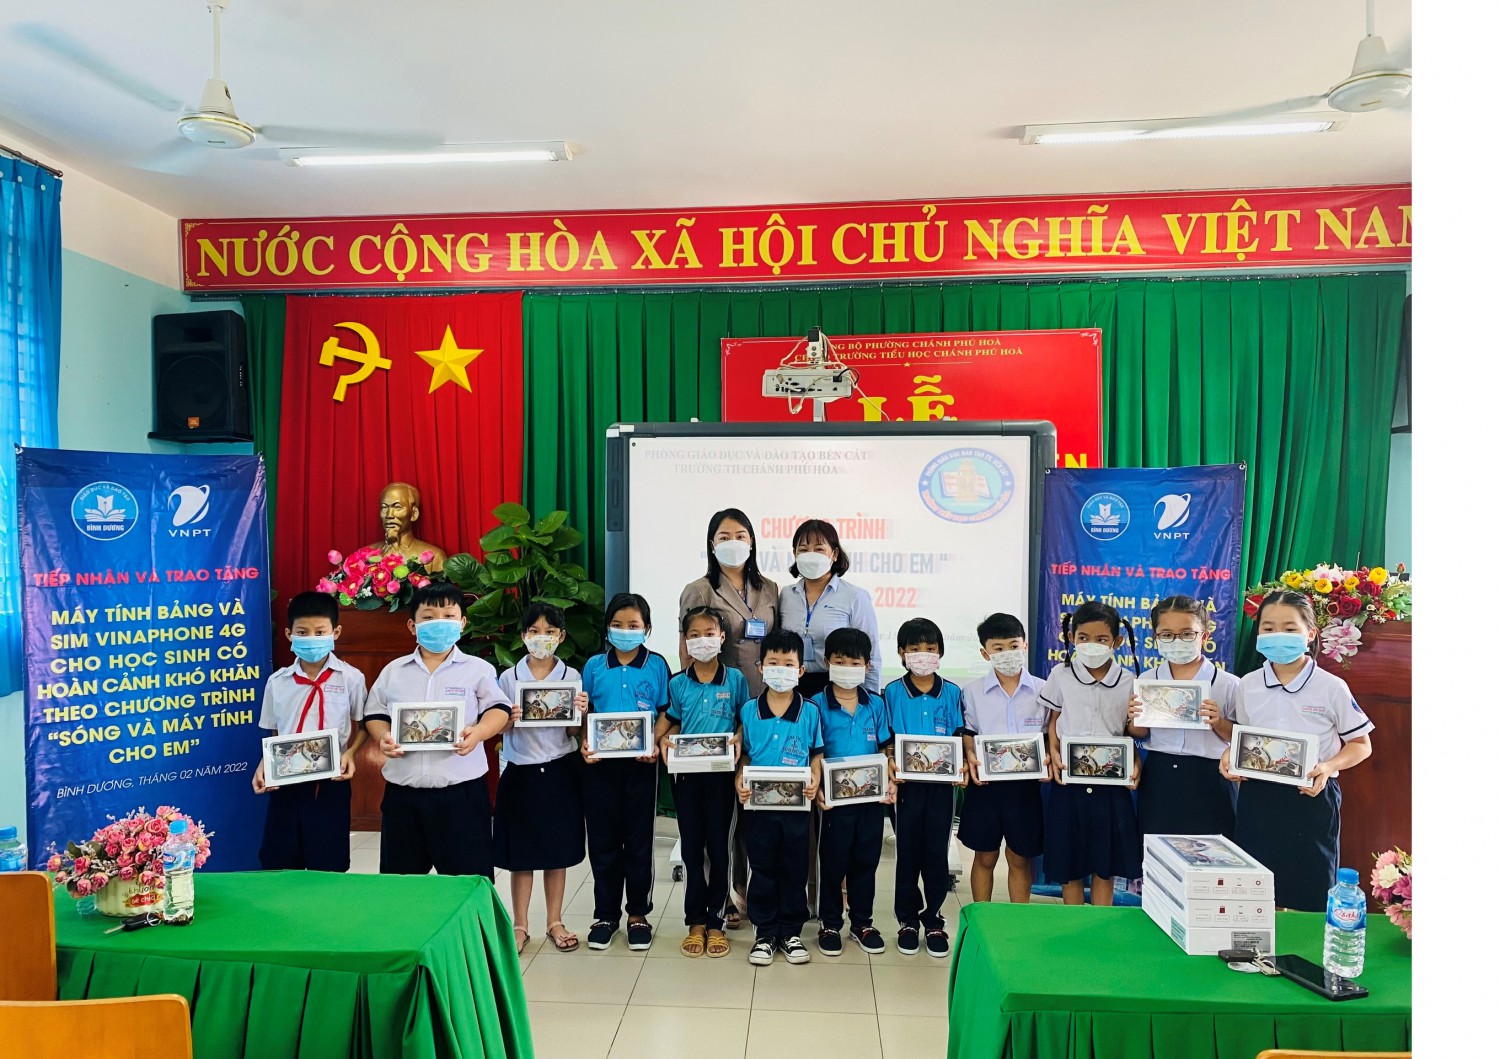 Trao tặng thiết bị học tập cho học sinh có  hoàn cảnh khó khăn tại trường TH Chánh Phú Hòa